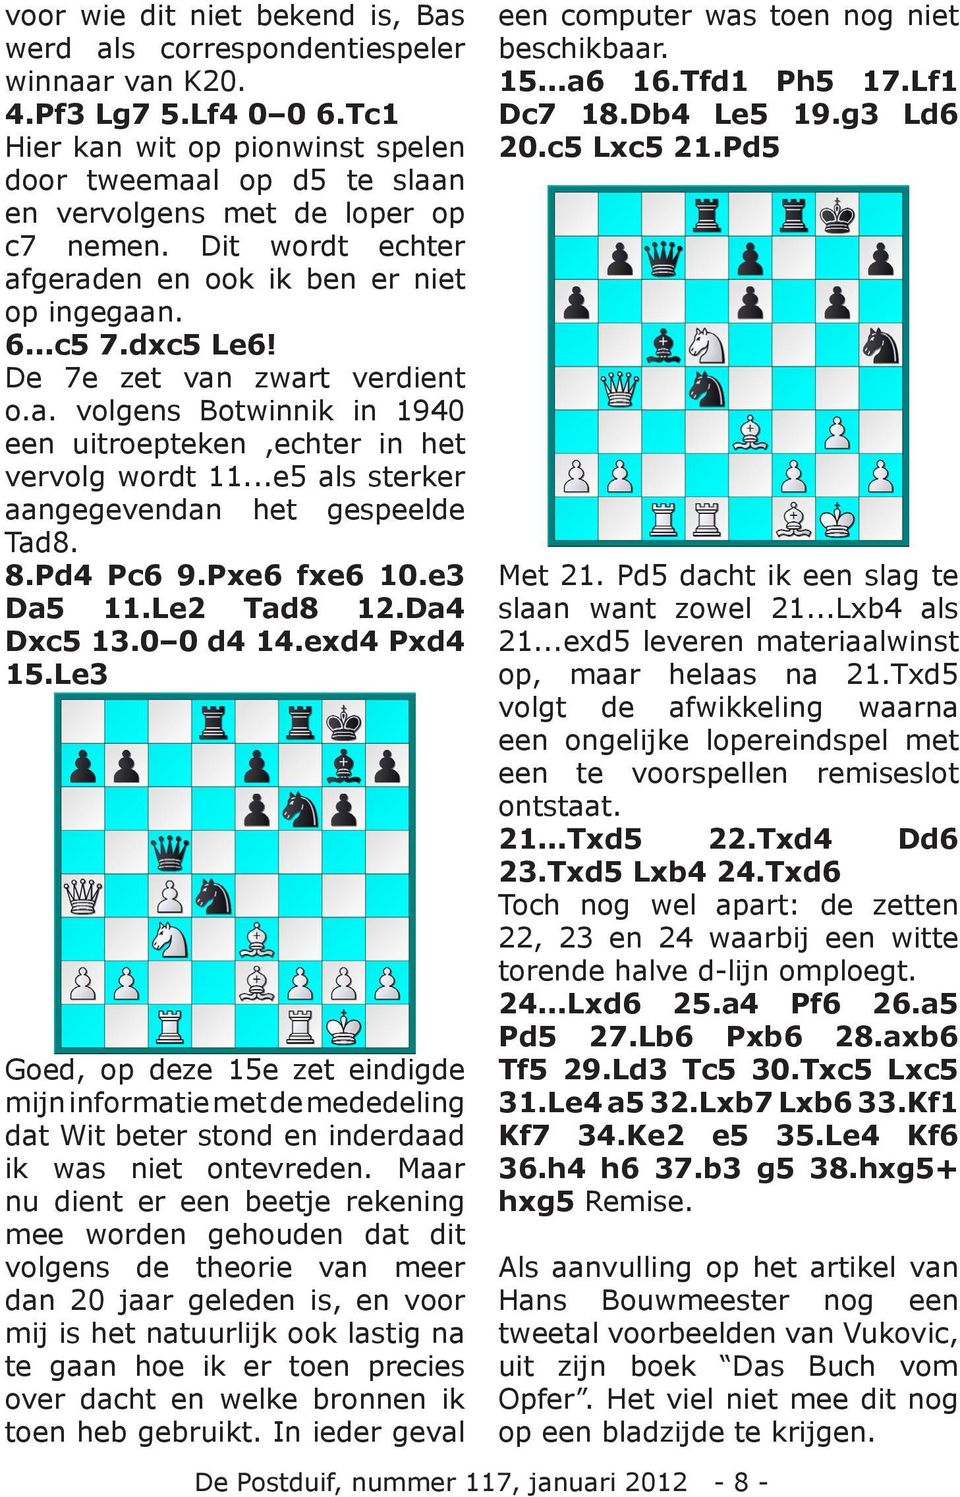 De 7e zet van zwart verdient o.a. volgens Botwinnik in 1940 een uitroepteken,echter in het vervolg wordt 11...e5 als sterker aangegevendan het gespeelde Tad8. 8.Pd4 Pc6 9.Pxe6 fxe6 10.e3 Da5 11.